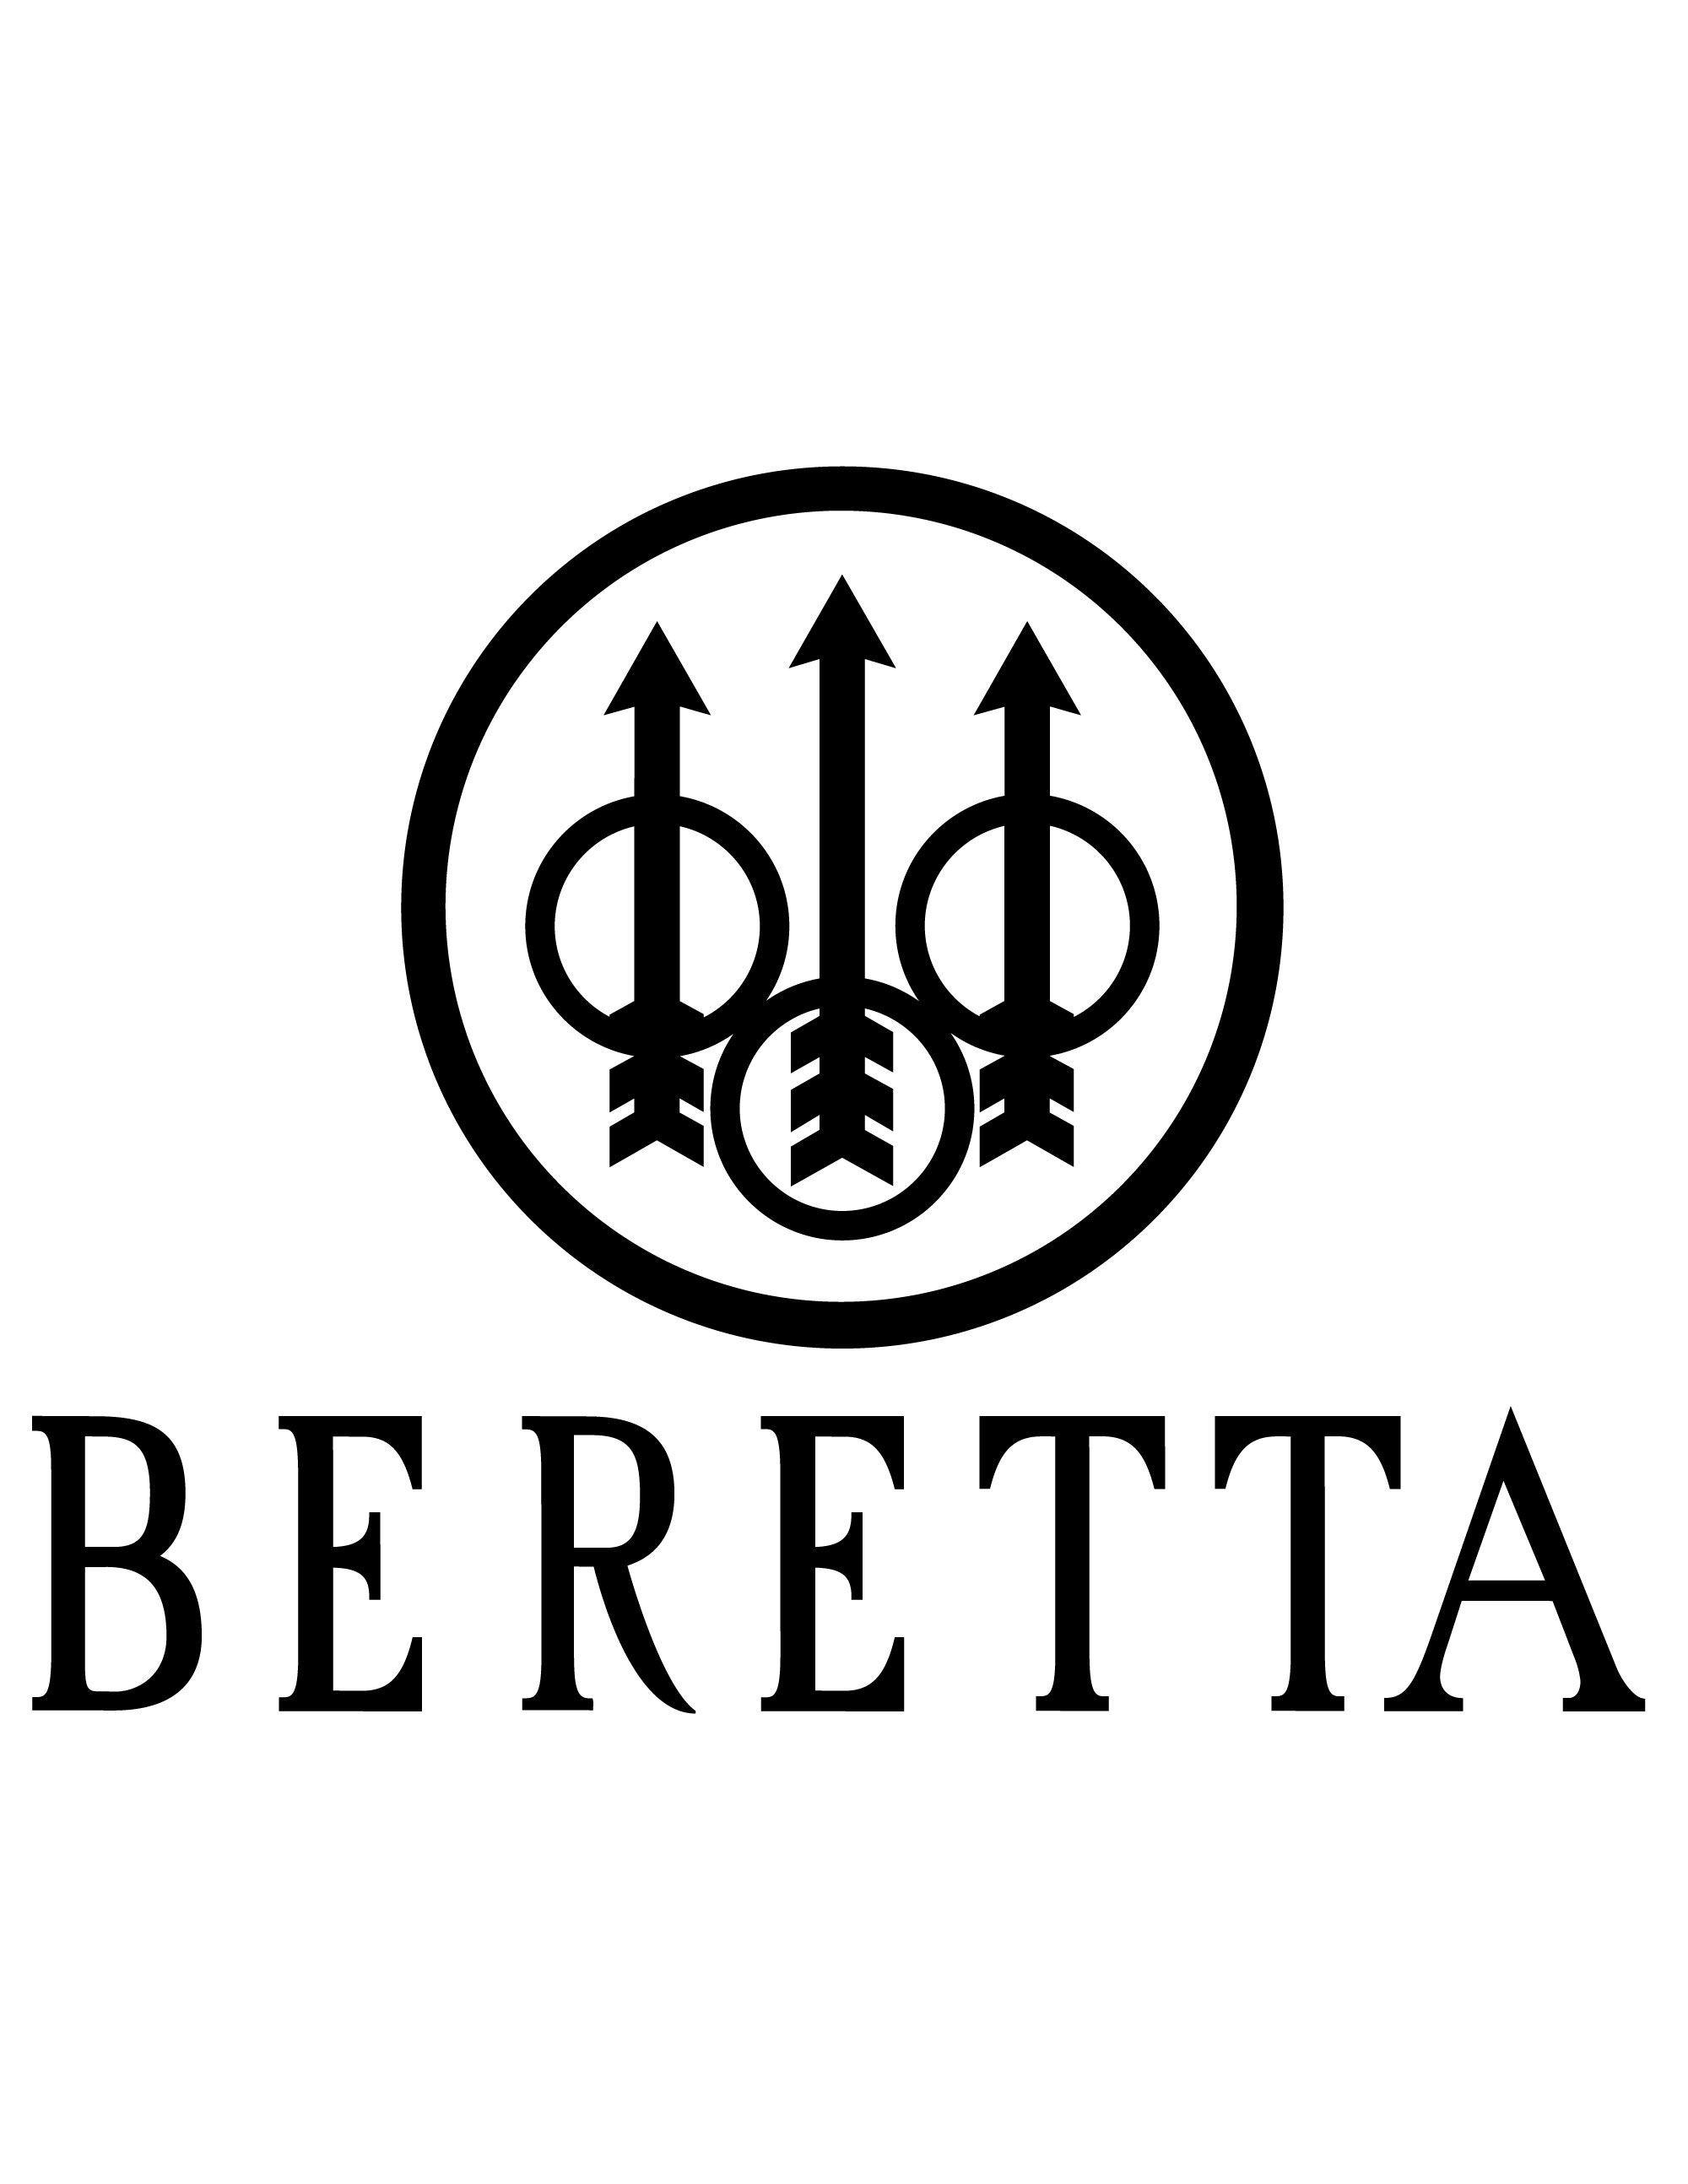 Beretta Logo - Beretta (Firearms manufacturer). cool. Firearms, Guns, Shotgun